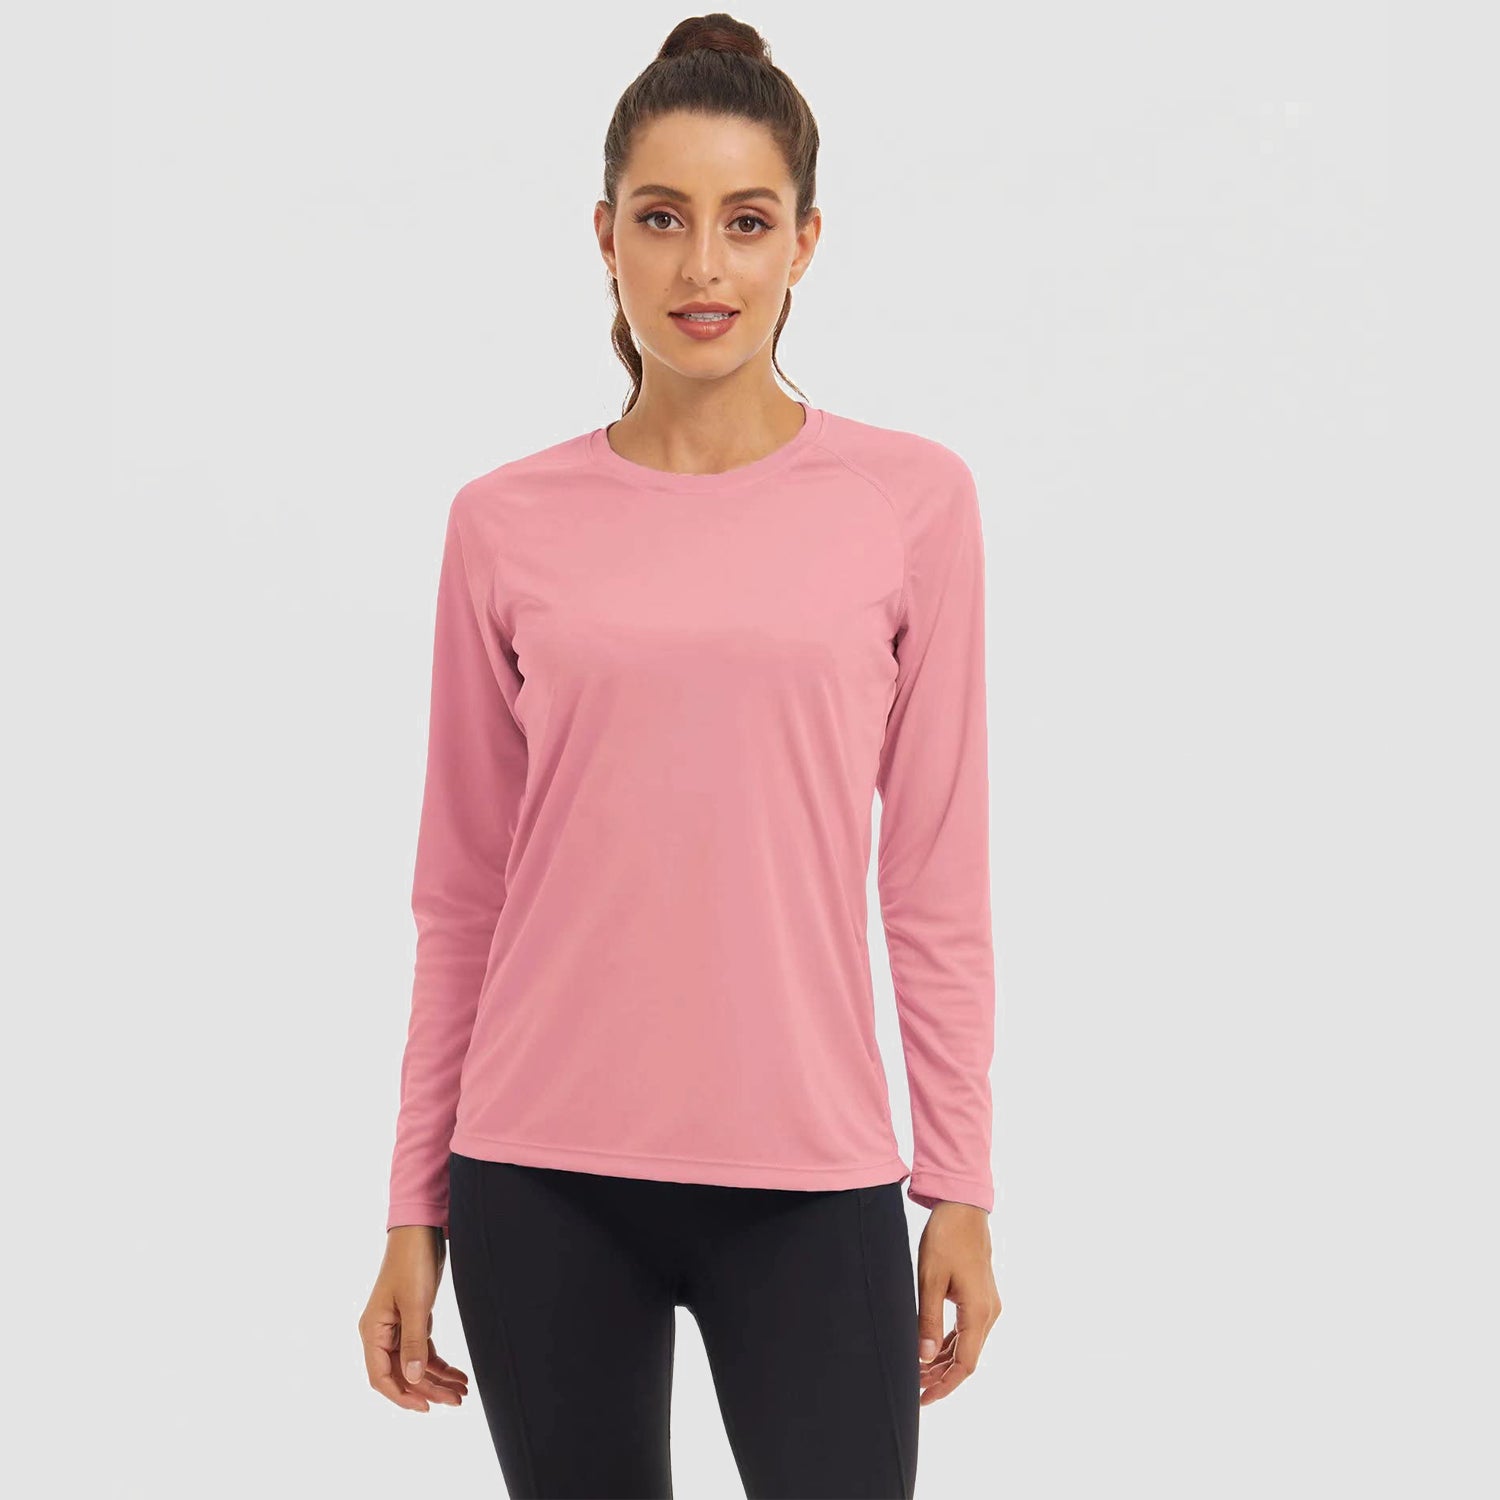 Women's Long Sleeve Shirts UPF 50+ Sun Protection Shirts for Hiking Fishing Workout Rash Guard, Pink / XL